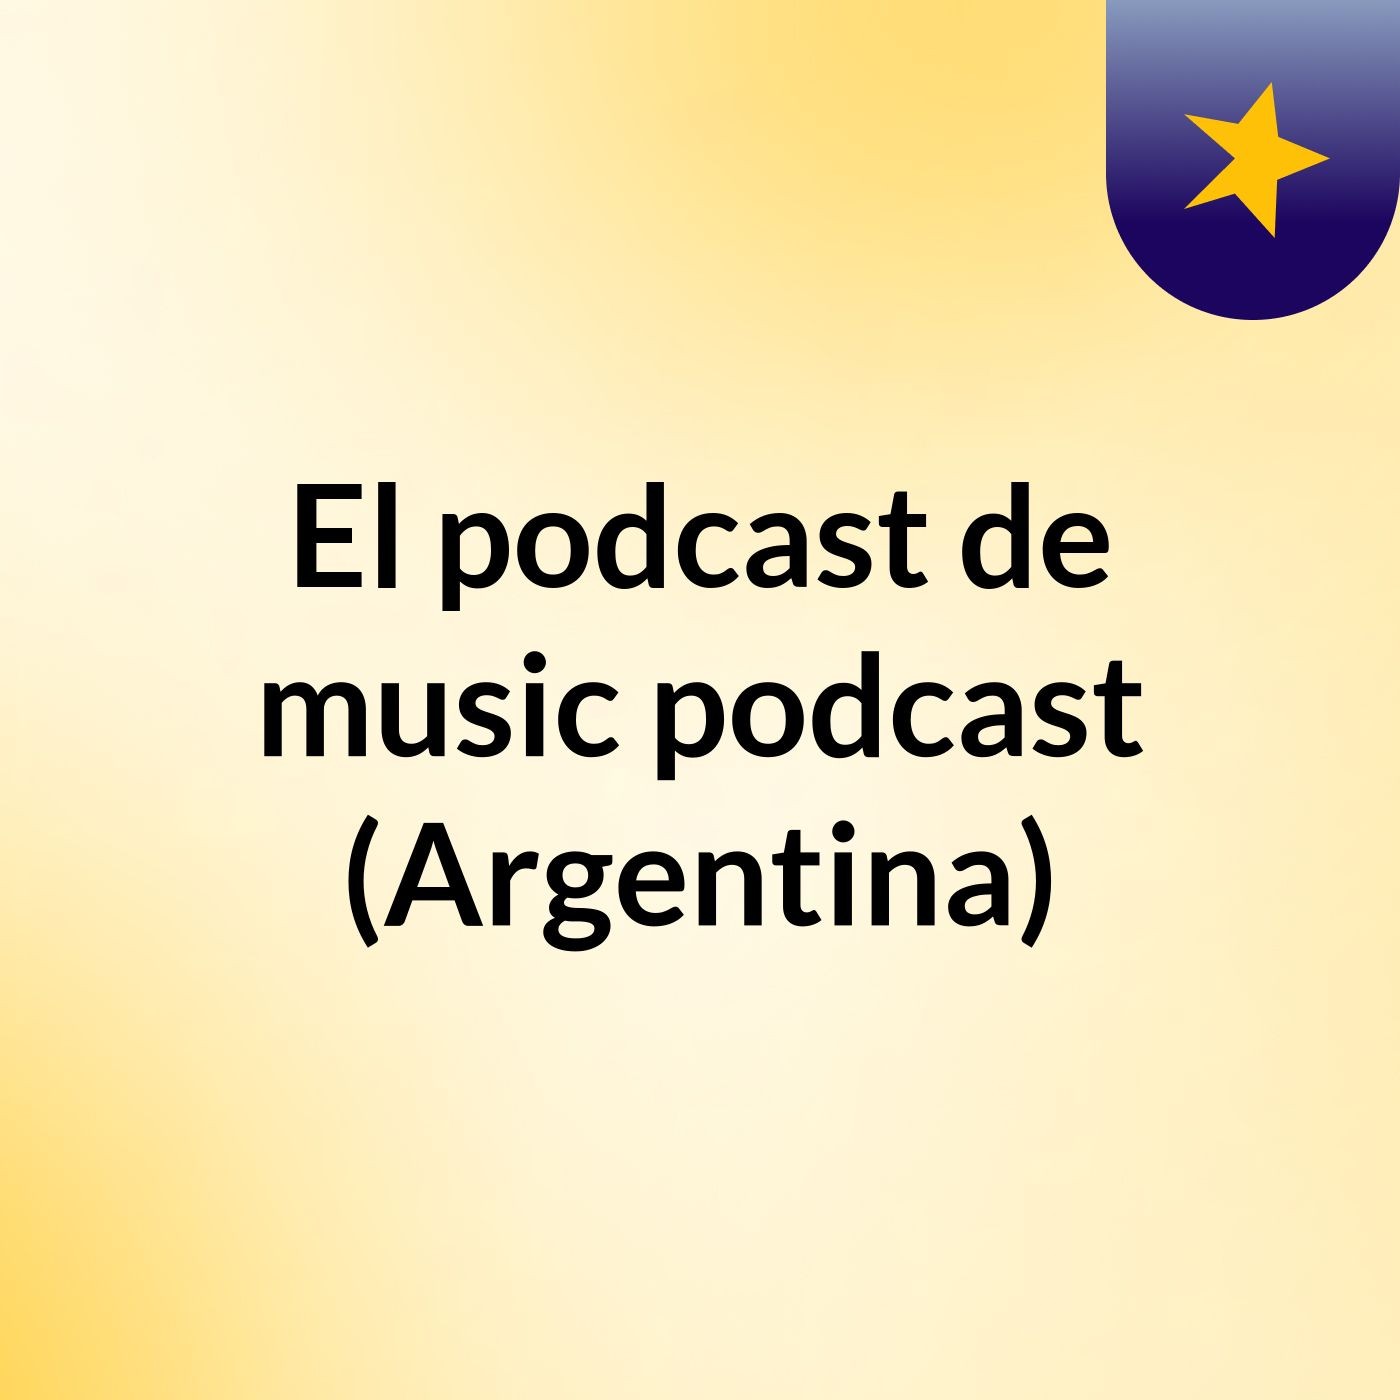 El podcast de music podcast (Argentina)